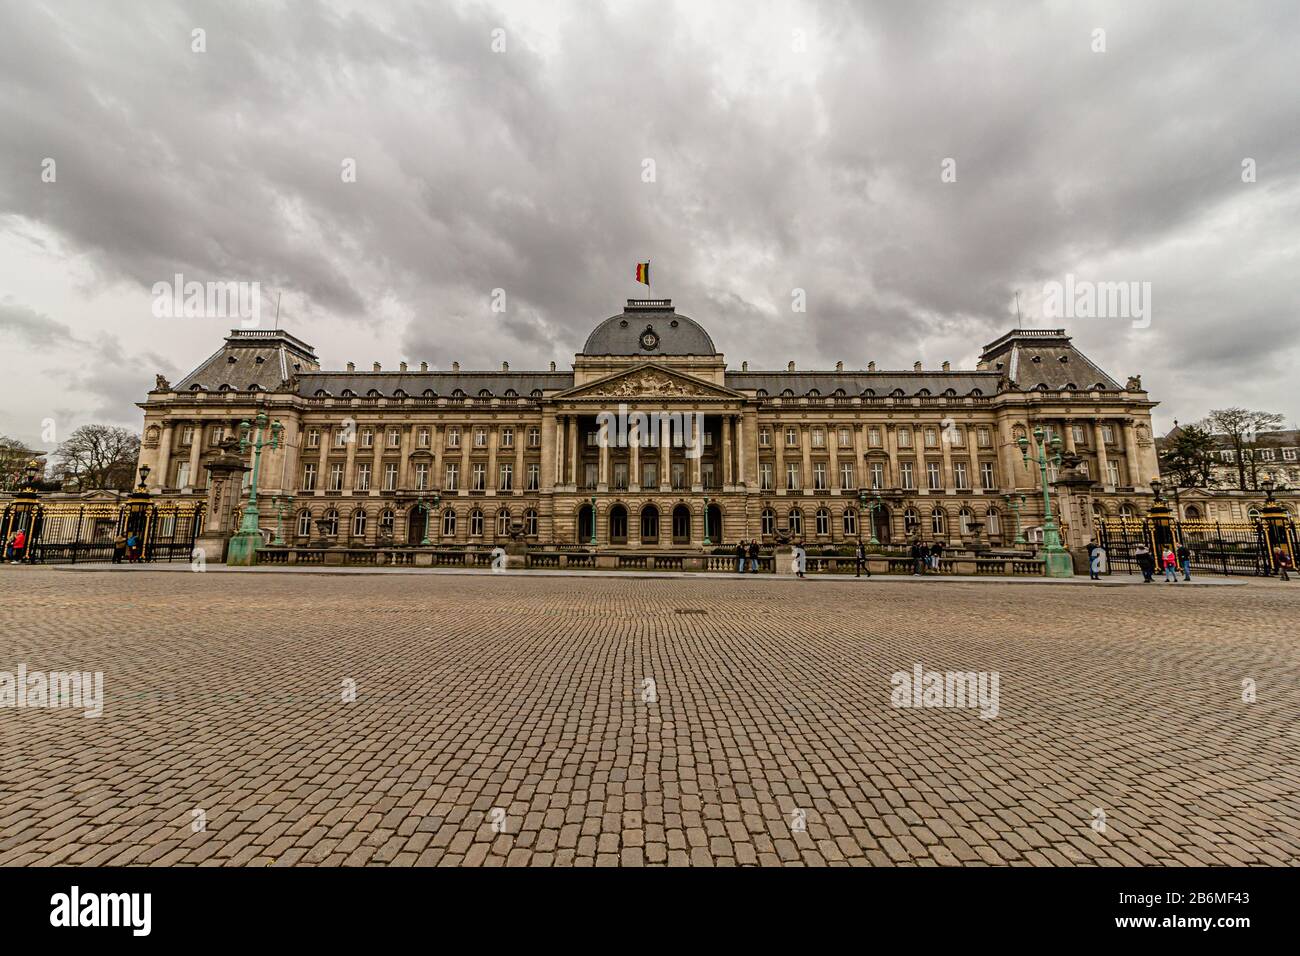 Le Palais Royal de Bruxelles, utilisé comme bureaux du Roi et de la Reine de Belgique. Bruxelles, Belgique. Mars 2019. Banque D'Images